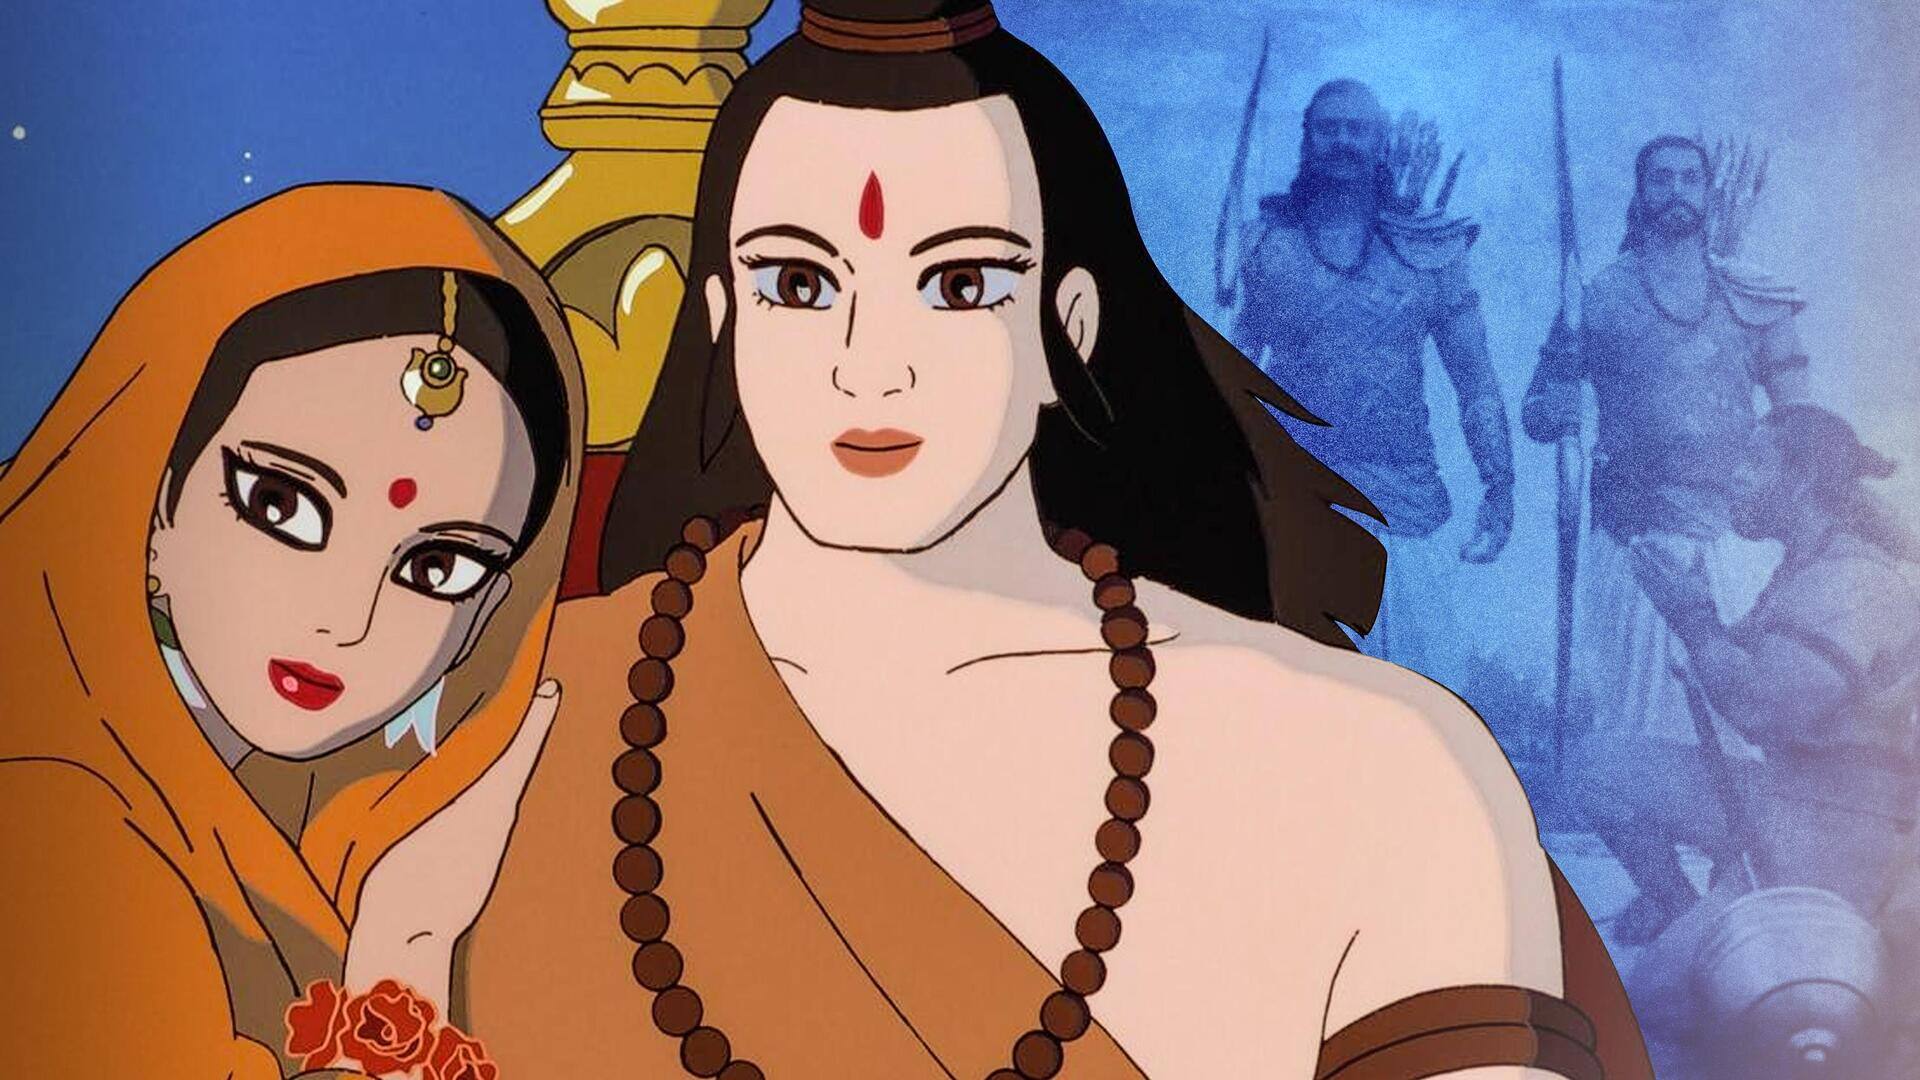 द लेजेंड ऑफ प्रिंस राम: जब जापानी निर्माताओं ने बारीकी से बनाई थी रामायण